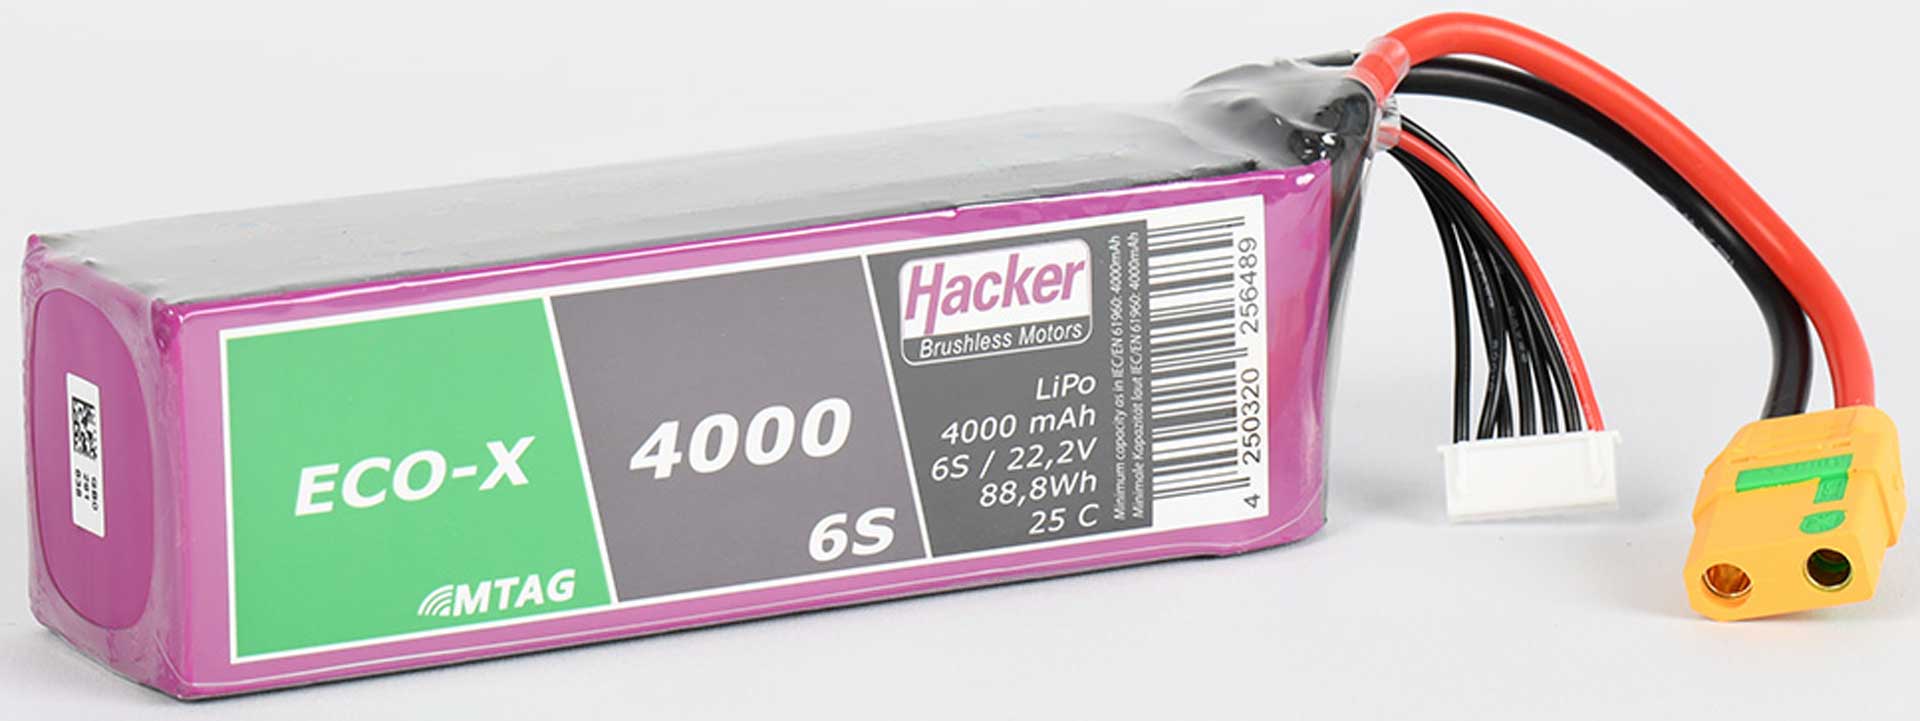 HACKER TF ECO-X 4000-6S MTAG